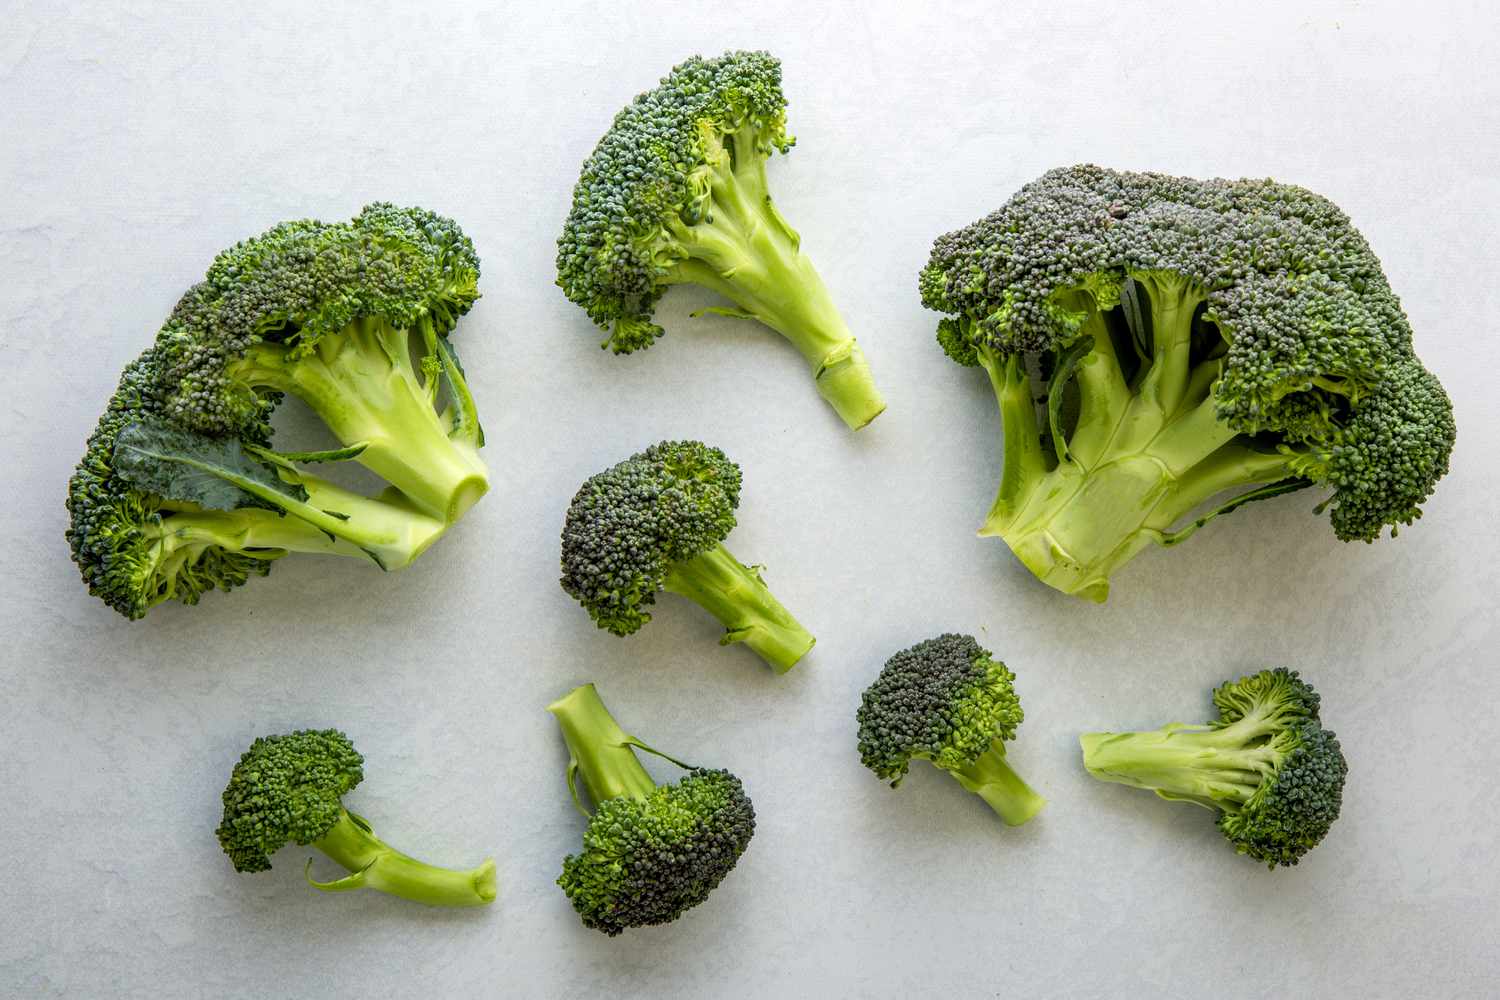 Bông cải xanh là một trong những thực phẩm giàu chất xơ giúp giảm cân hiệu quả.